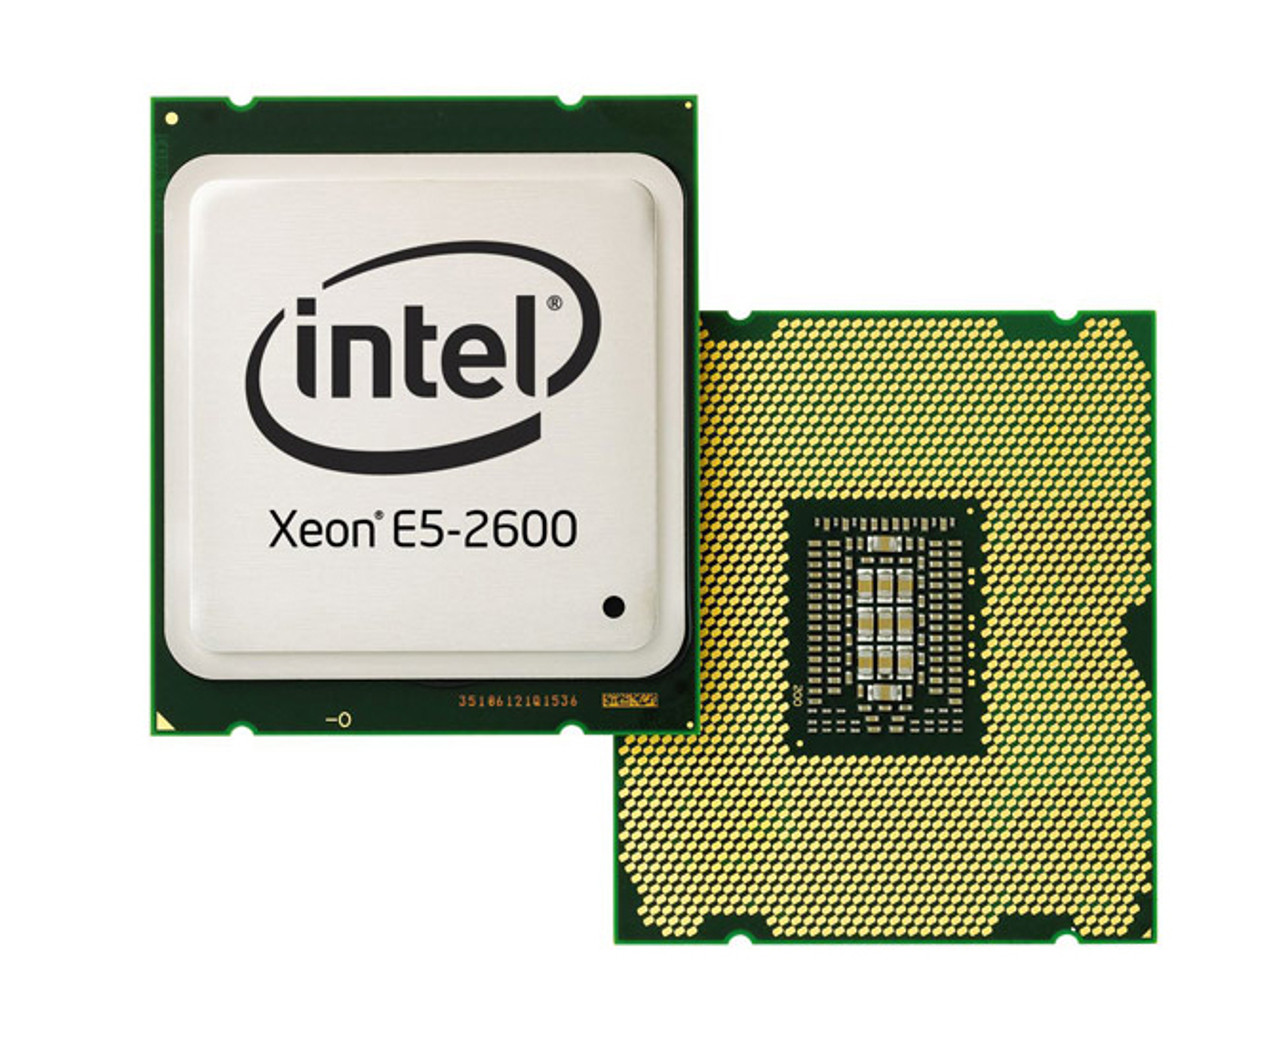 E5-2690V1 Intel Xeon E5-2690 8 Core 2.90GHz 8.00GT/s QPI 20MB L3 Cache Processor